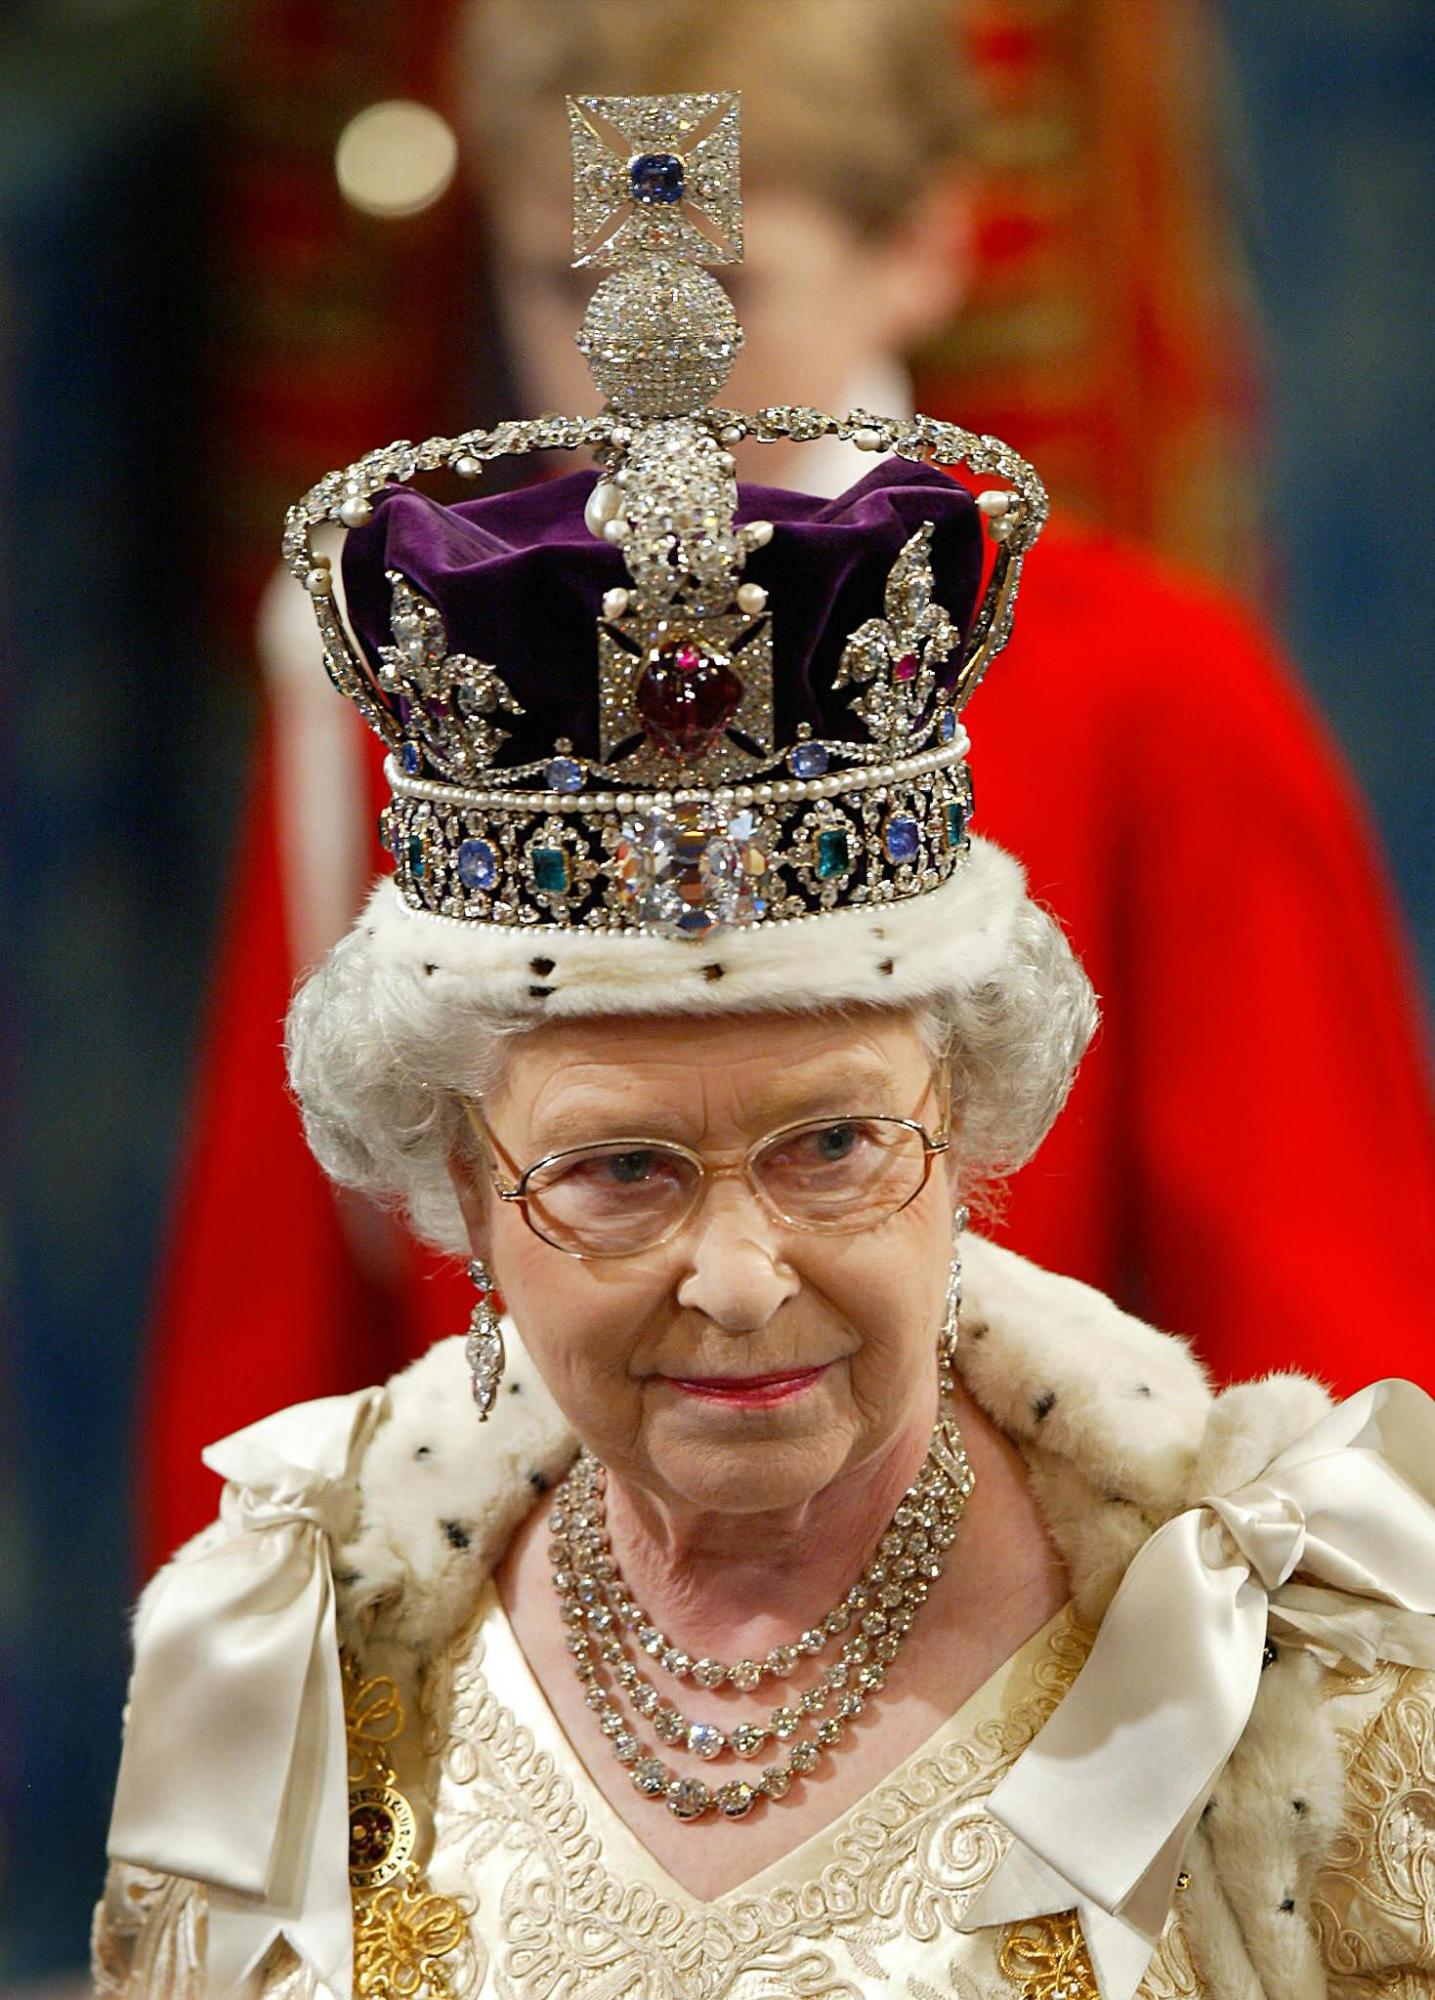 $!En esta imagen de 2002, la reina Isabel II luce la corona imperial durante su discurso de apertura en el parlamento en Londres (Photo by Adrian DENNIS / POOL / AFP)